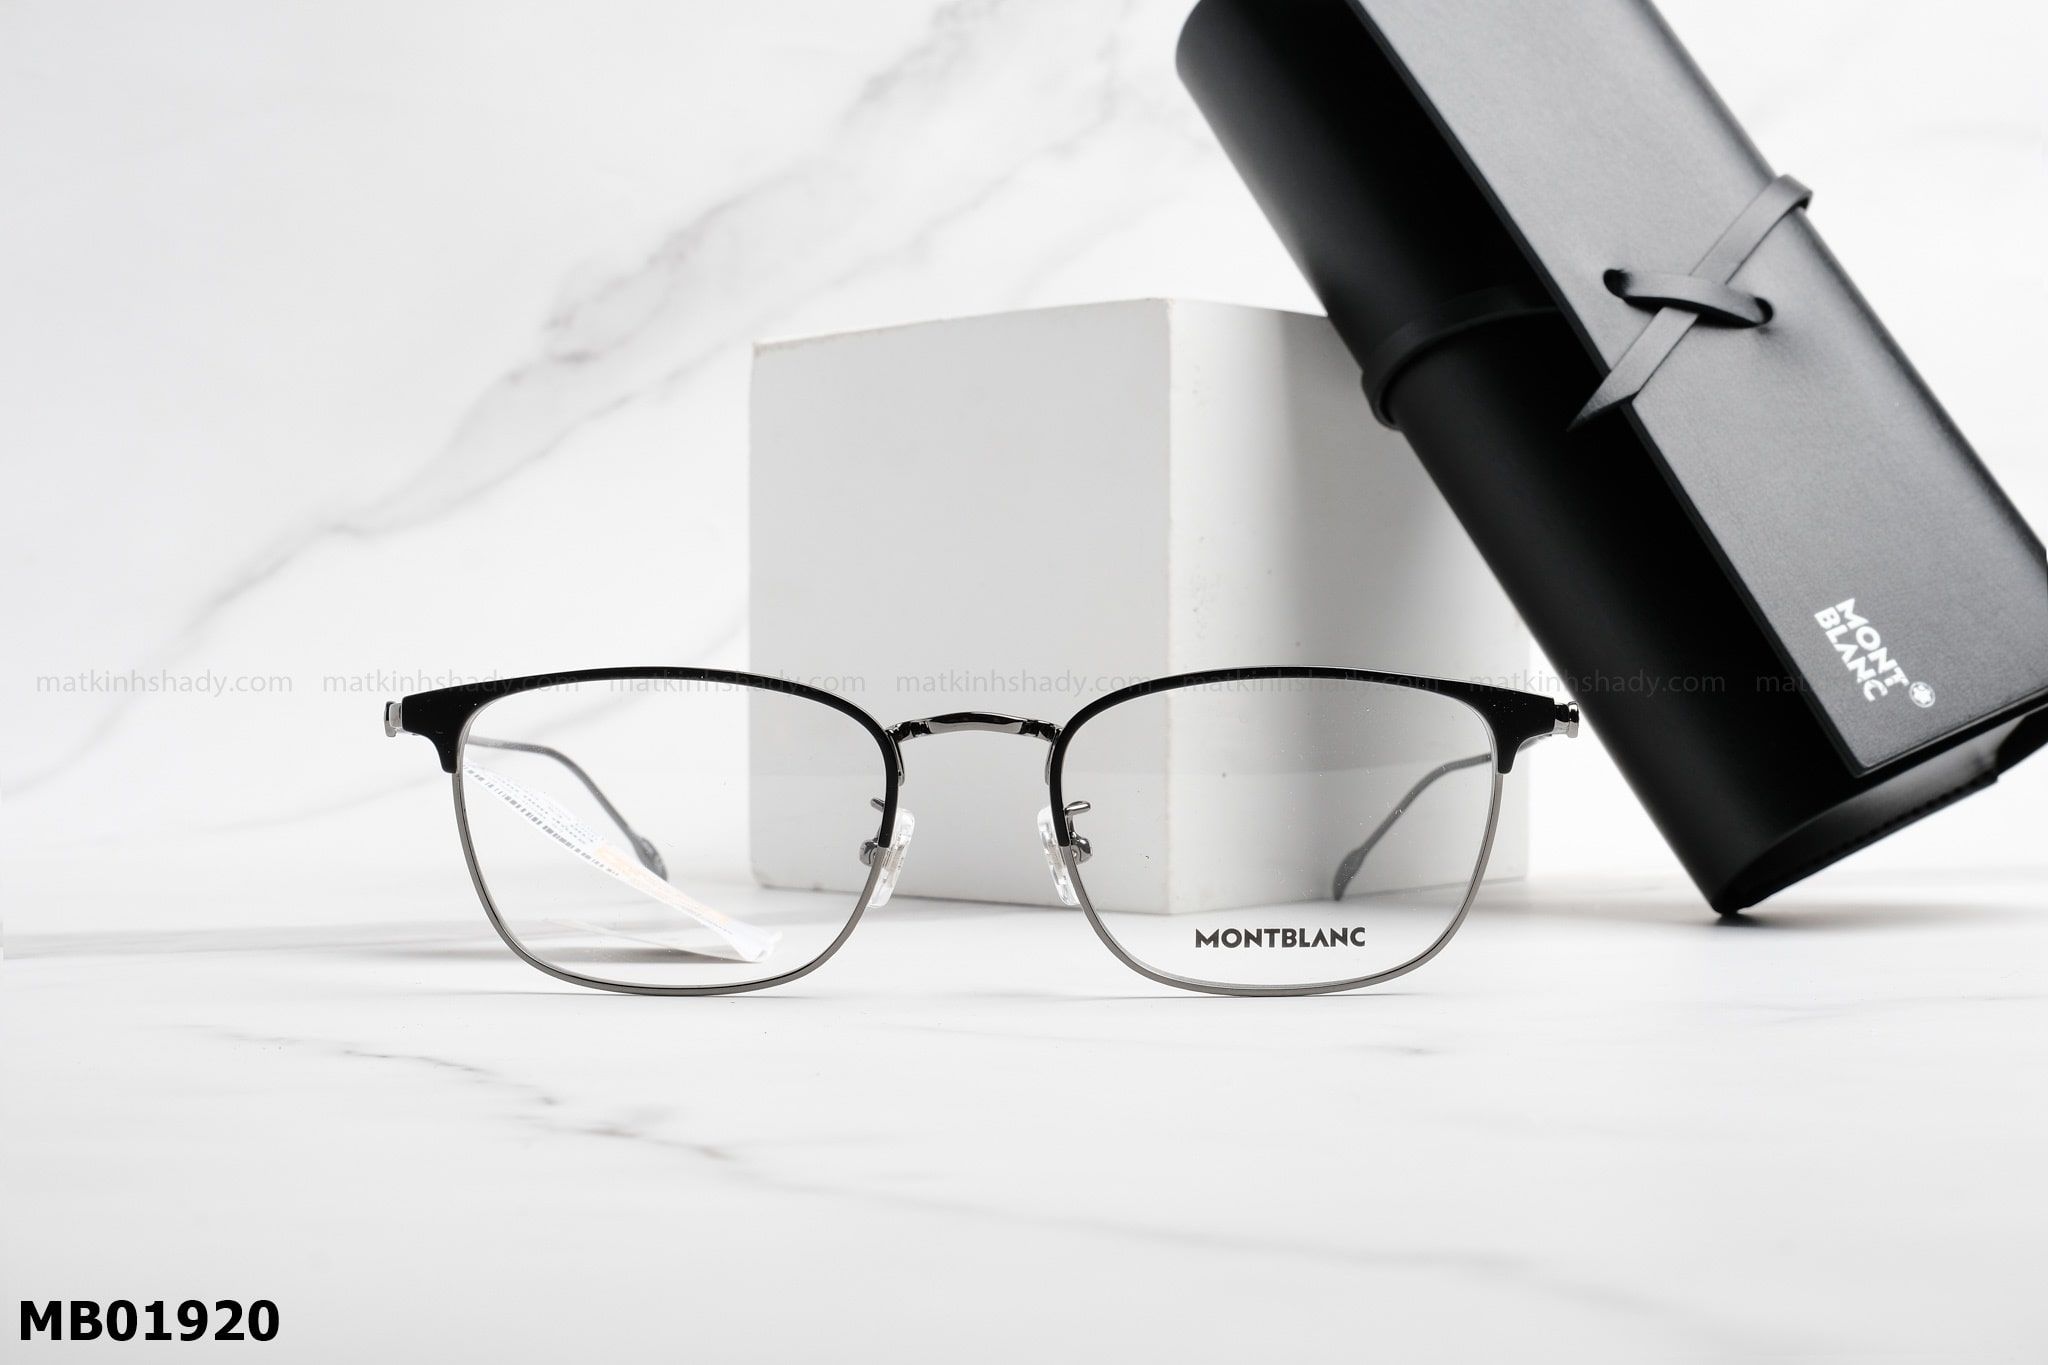  Montblanc Eyewear - Glasses - MB01920 